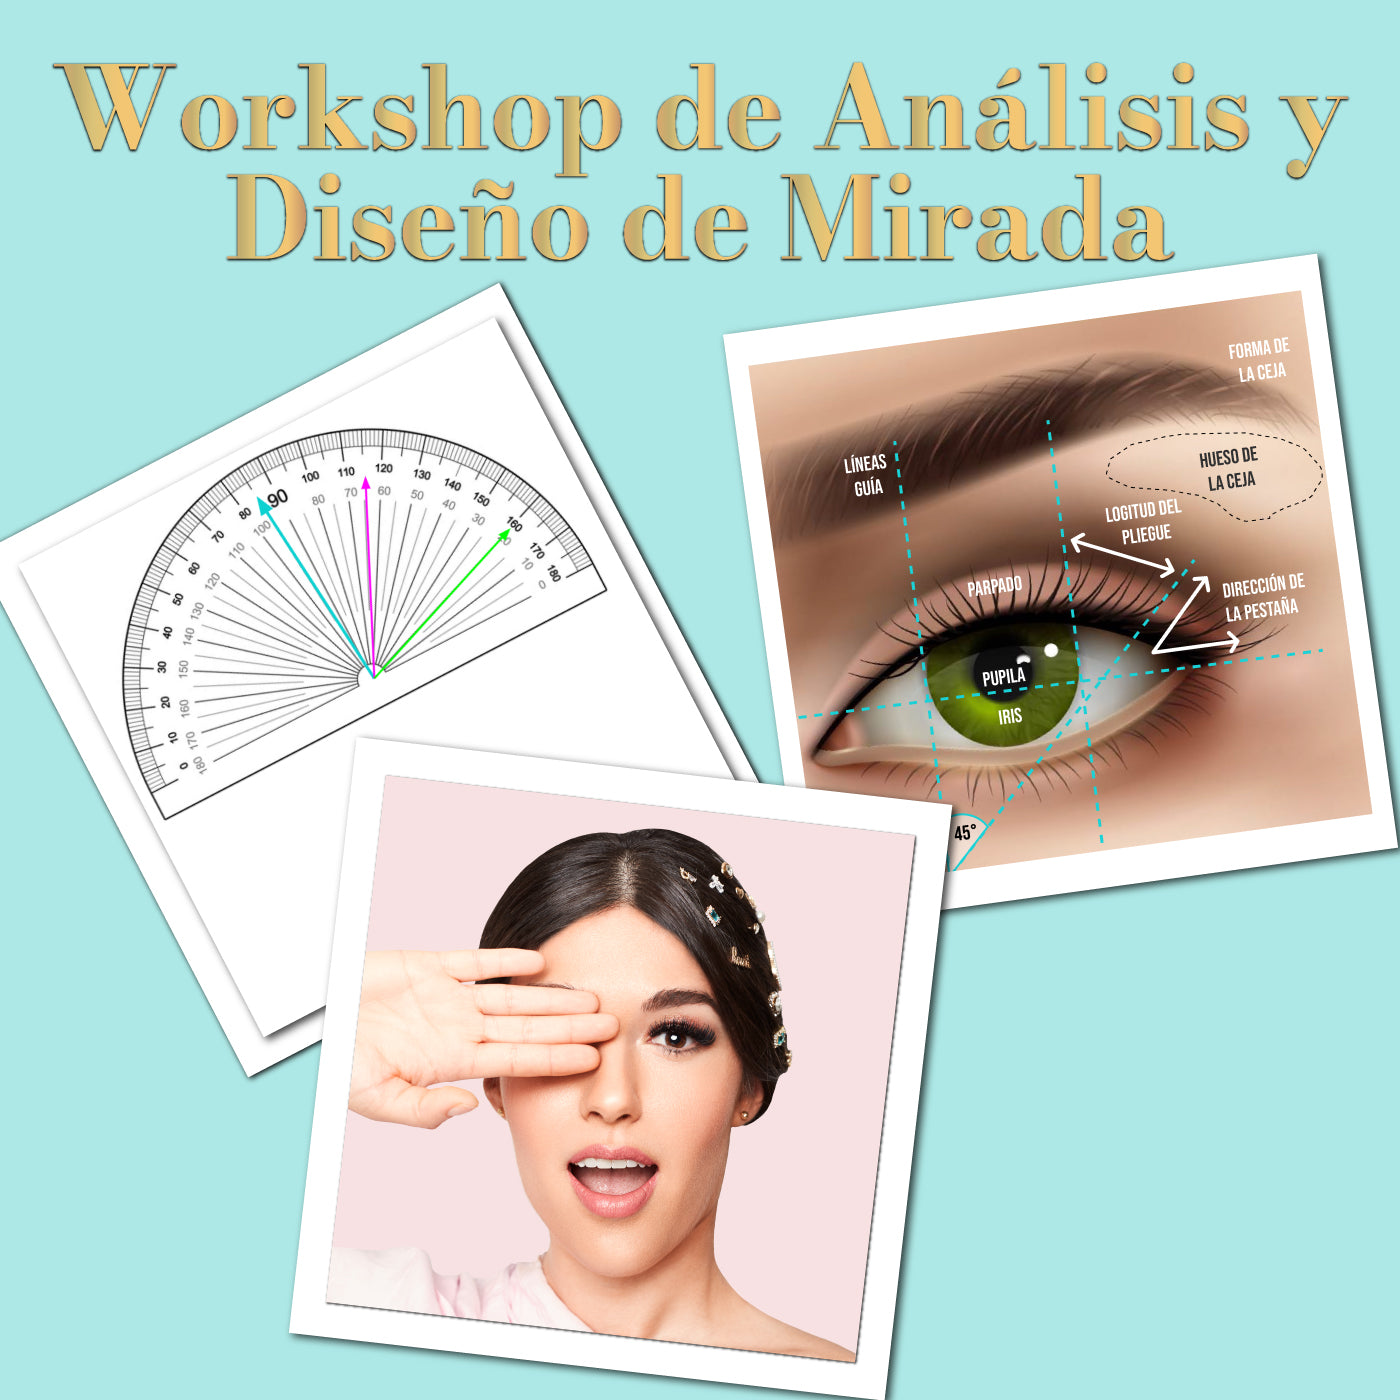 Workshop de Análisis y Diseño de Mirada